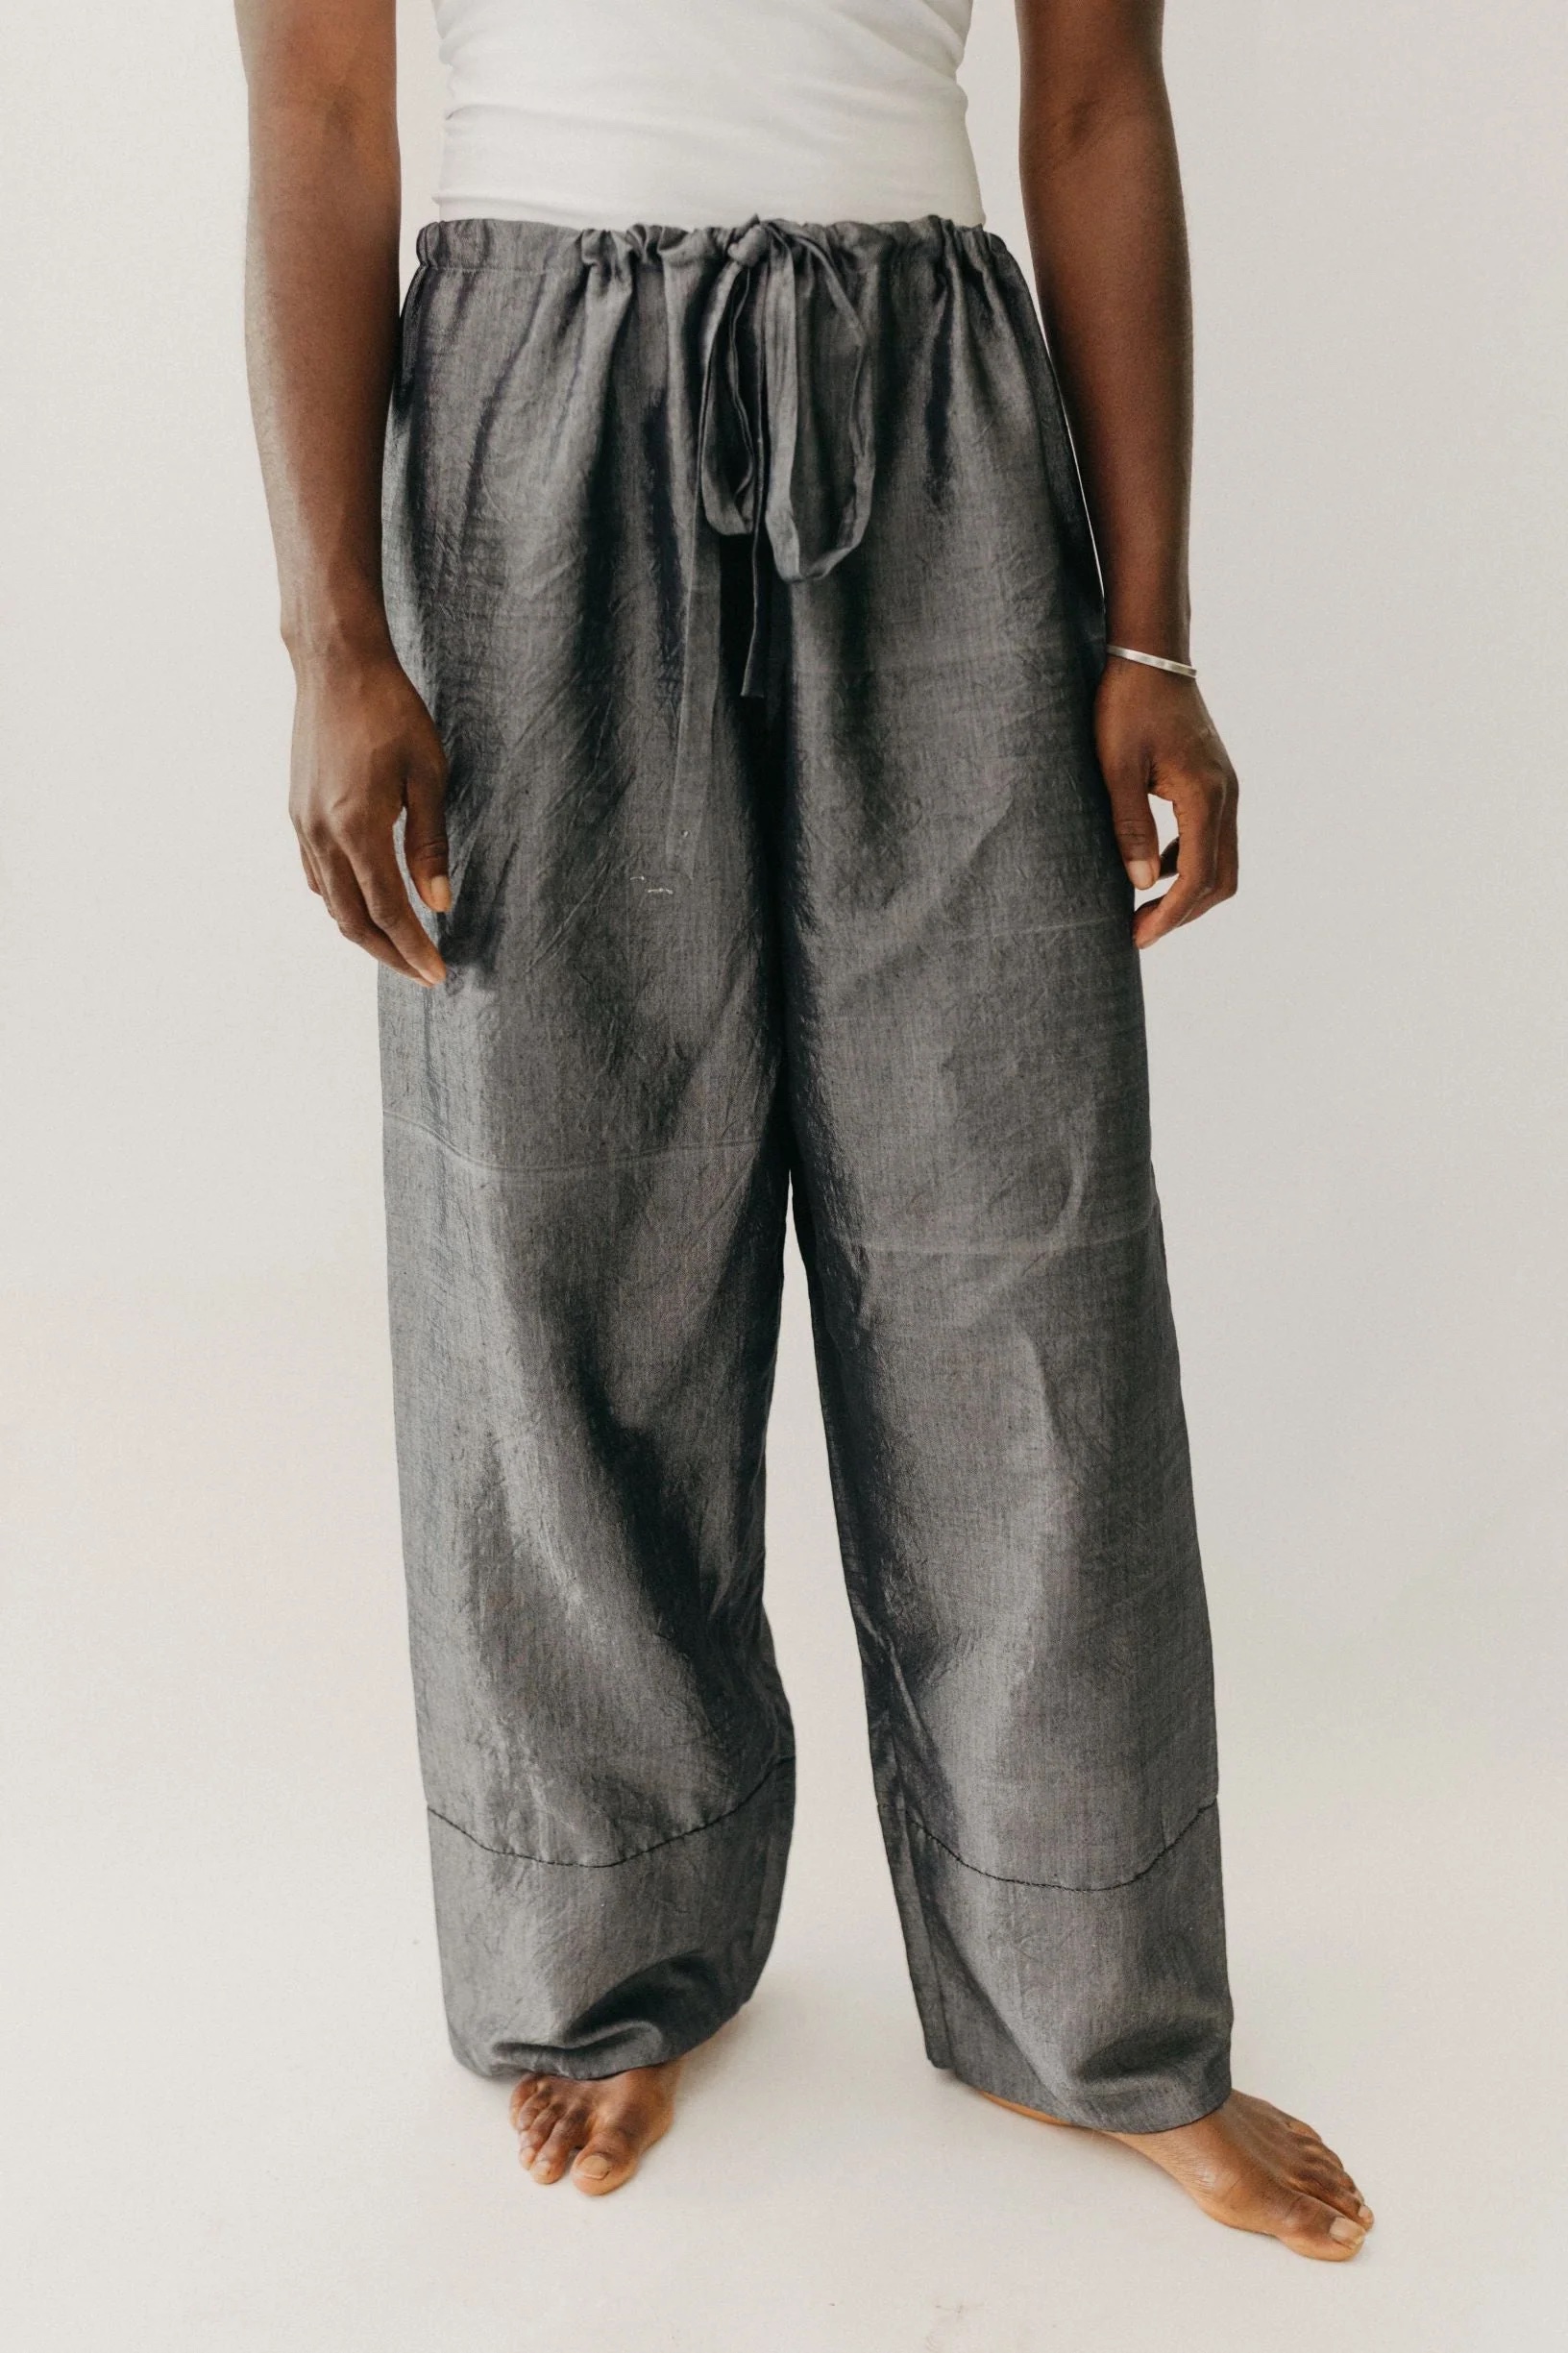 Folkwear 145 Unisex Chinese Pajamas - The Fold Line